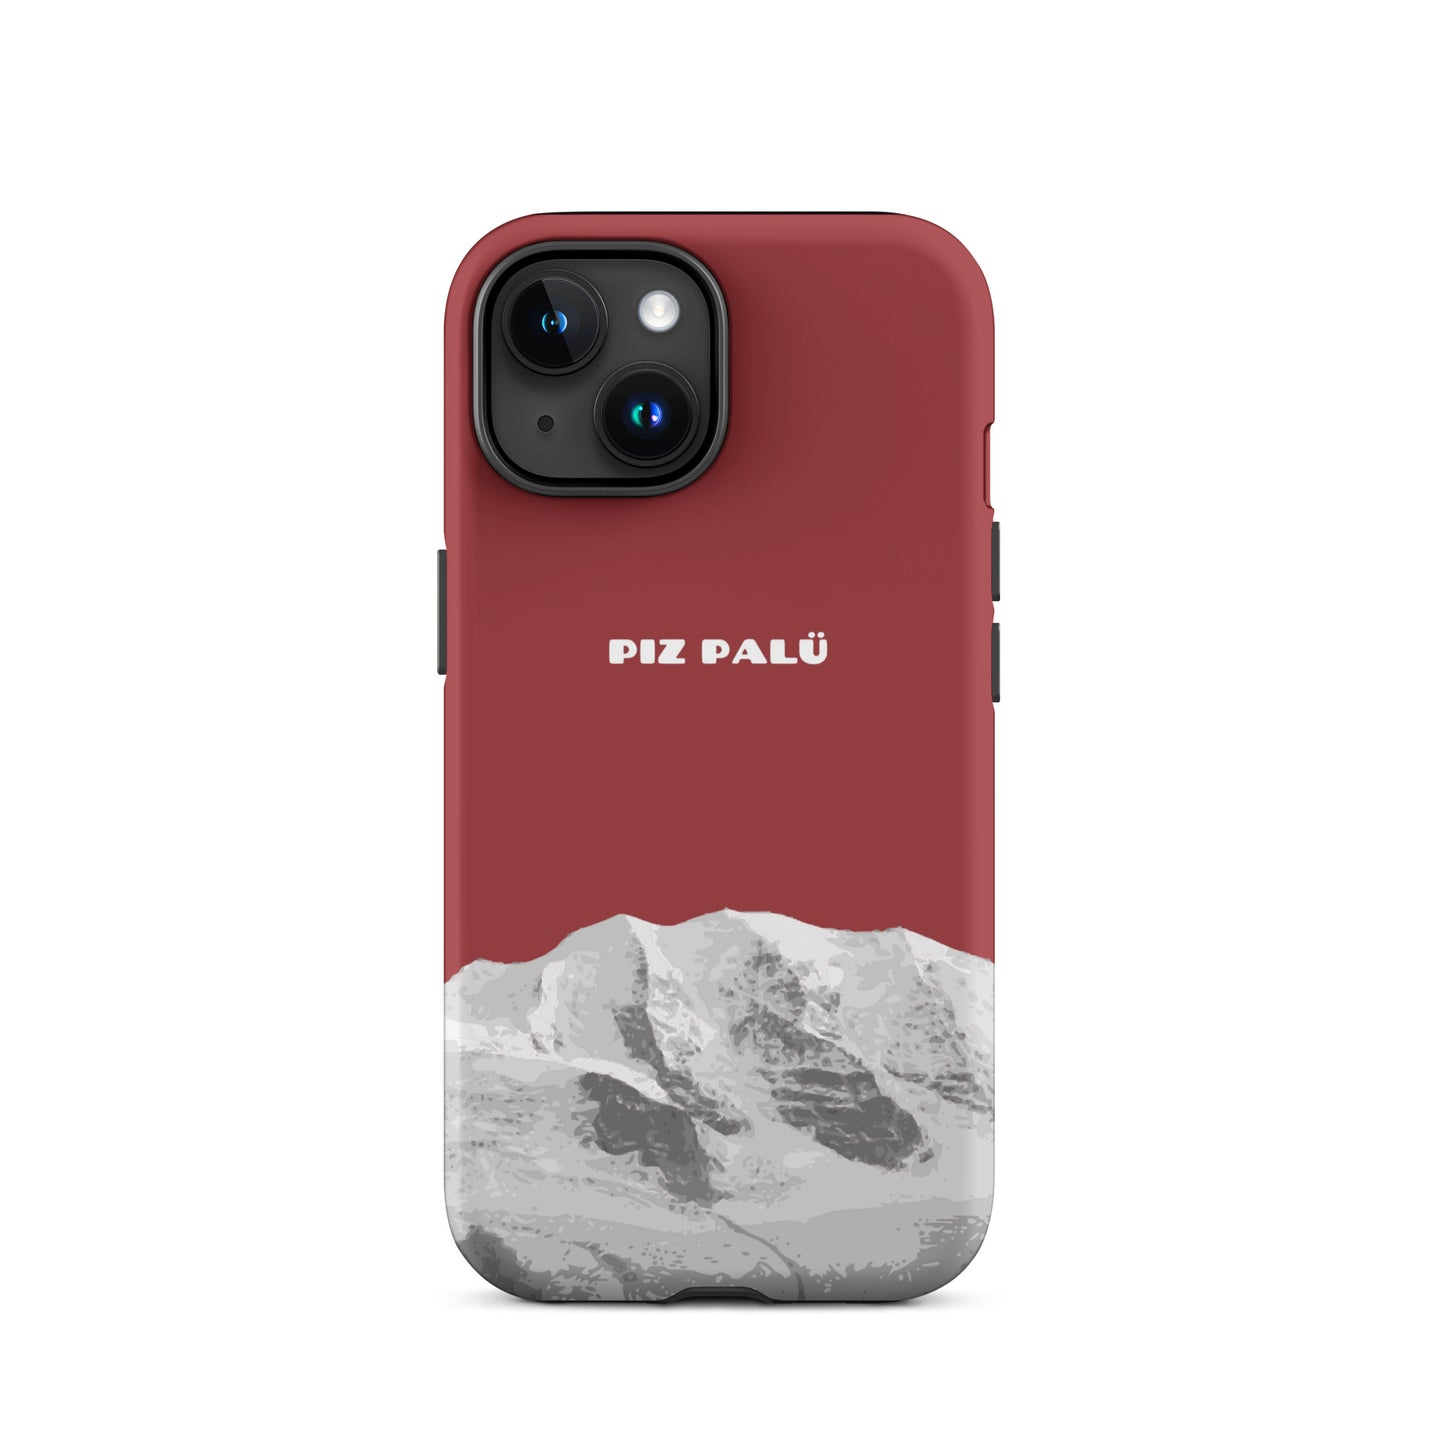 Hülle für das iPhone 15 von Apple in der Farbe Pastellviolett, dass den Piz Palü in Graubünden zeigt.